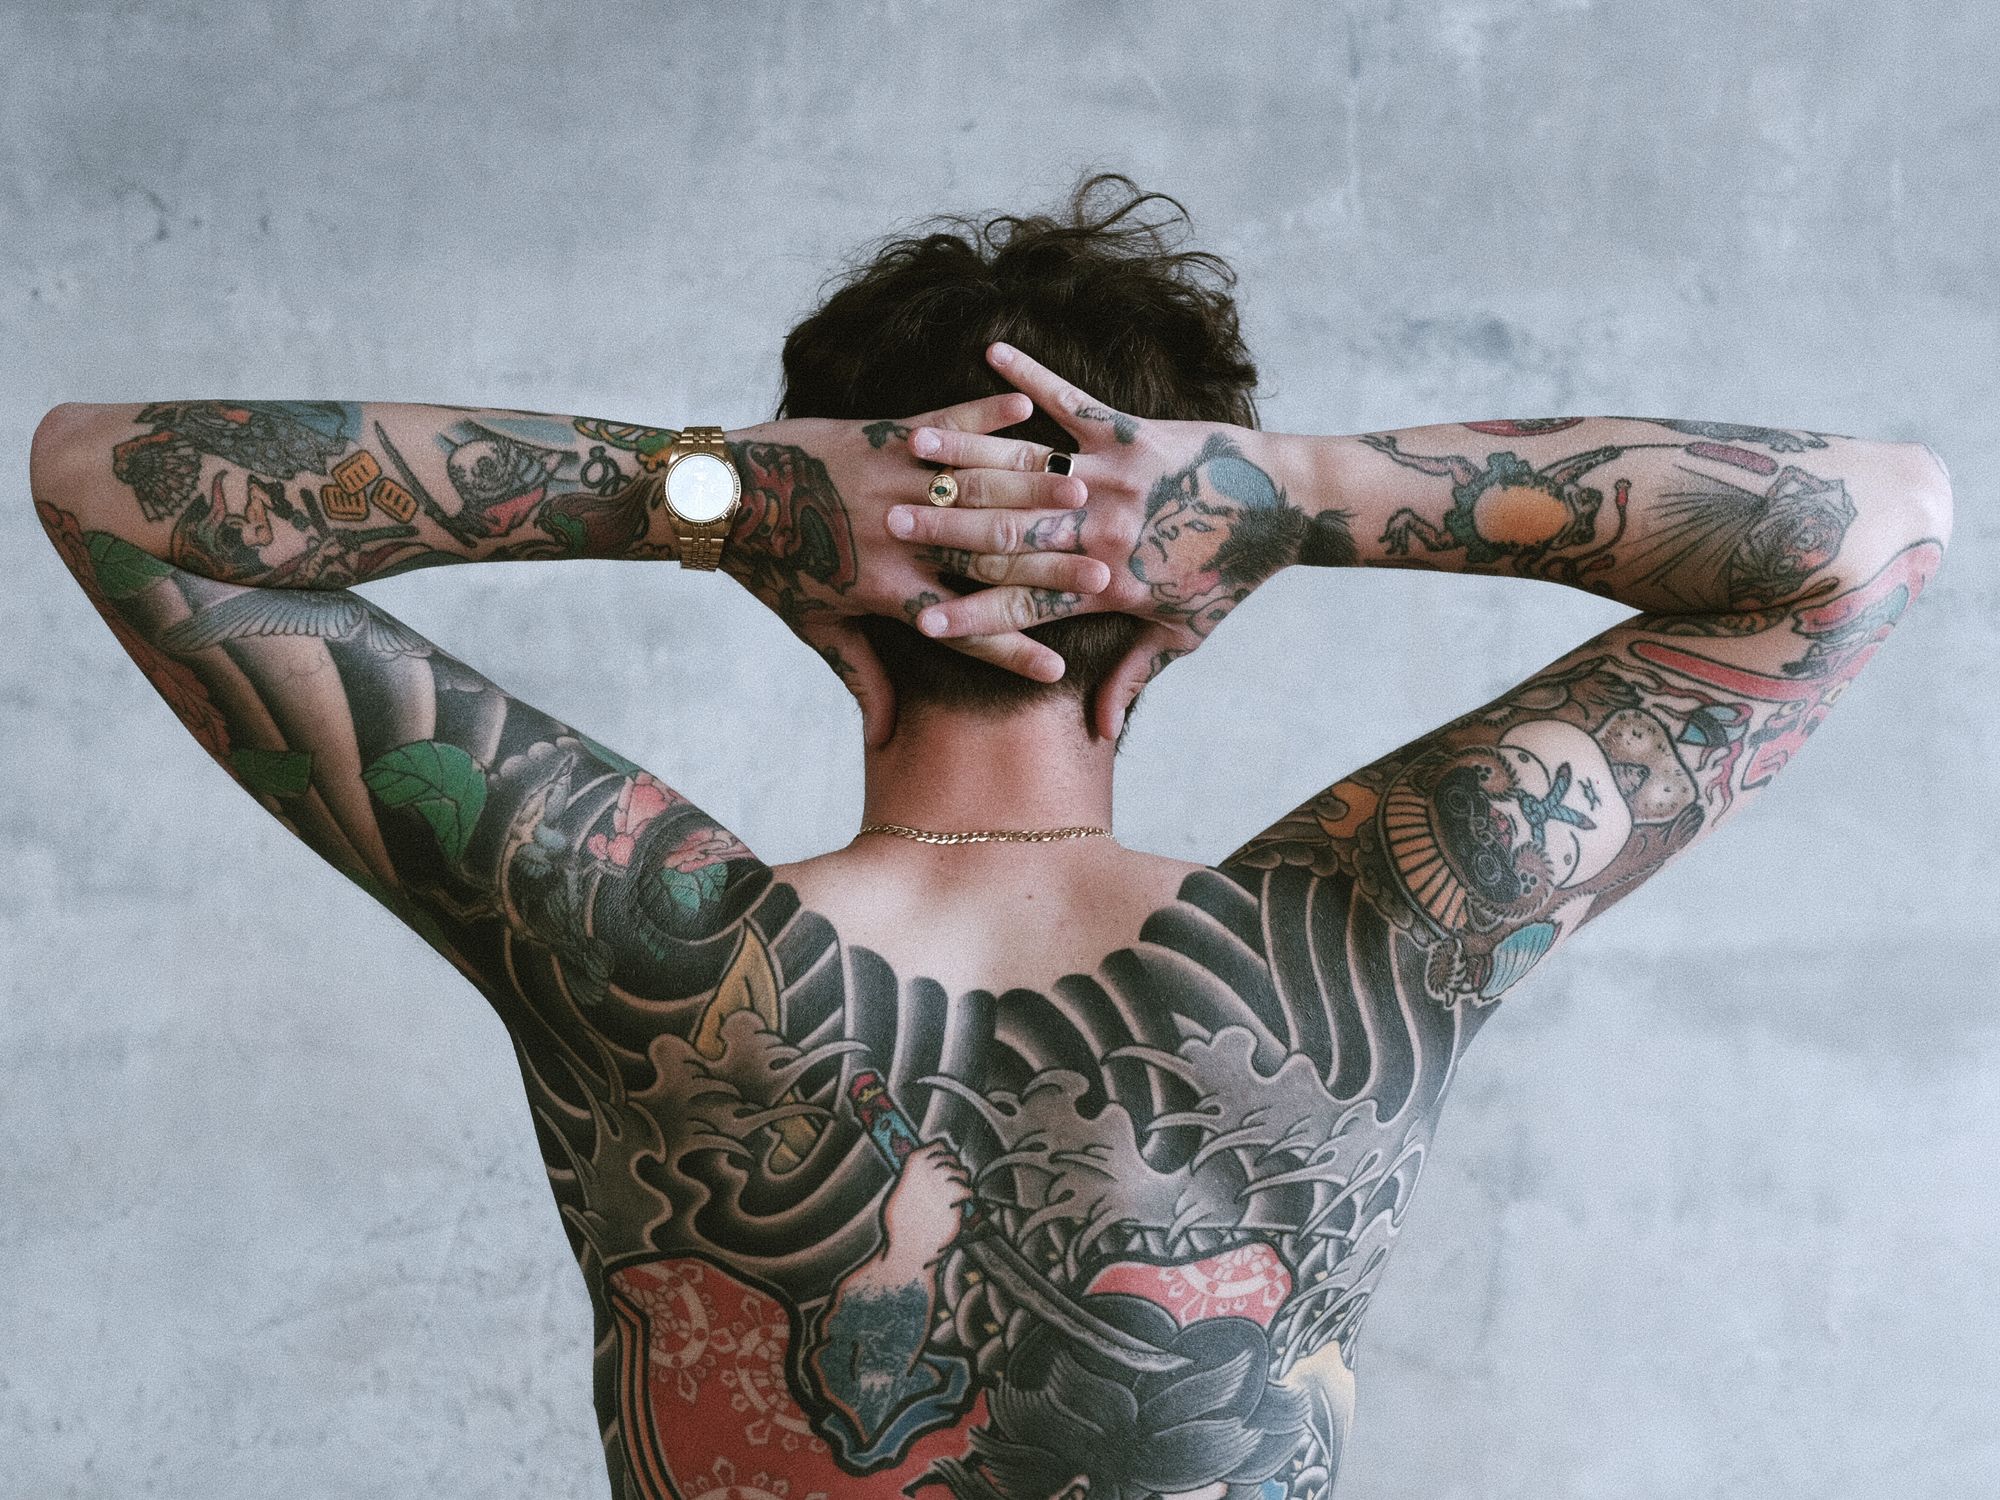 Czy na pewno nosisz na sobie tradycyjny japoński tatuaż - rozmowa z Mateuszem Kanu i Baksem